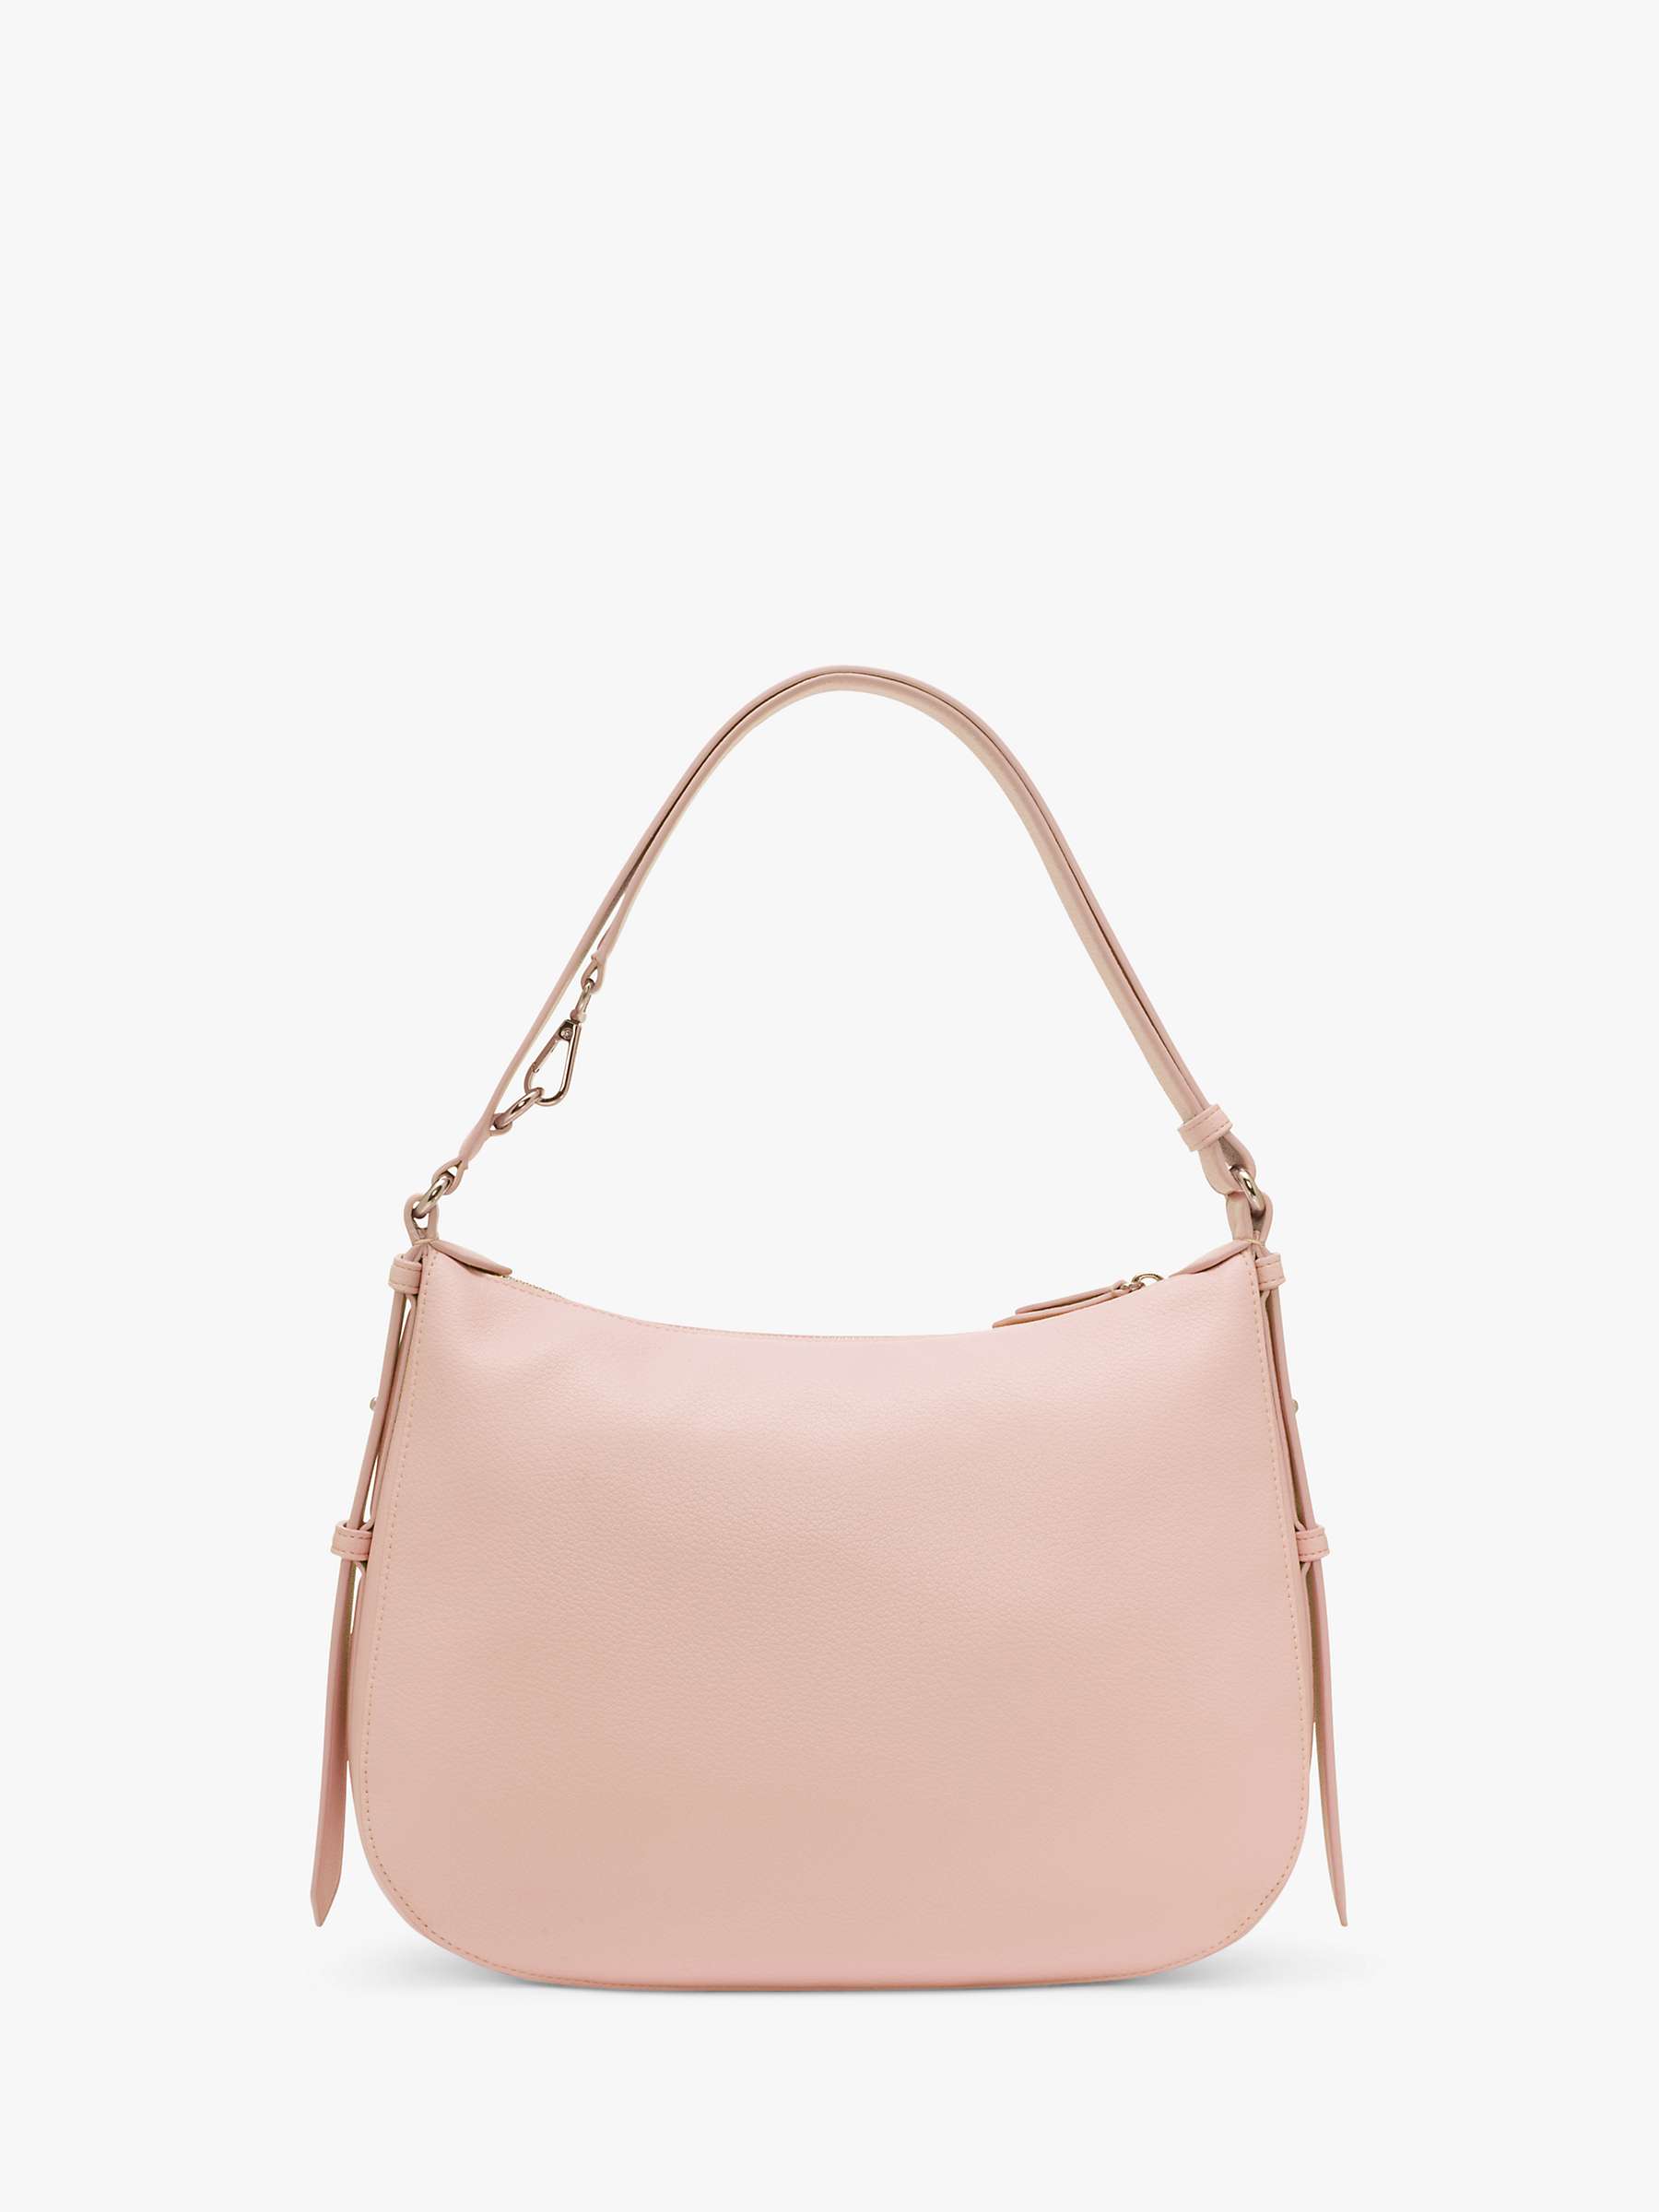 Buy DKNY Seventh Avenue Leather Hobo Shoulder Bag Online at johnlewis.com